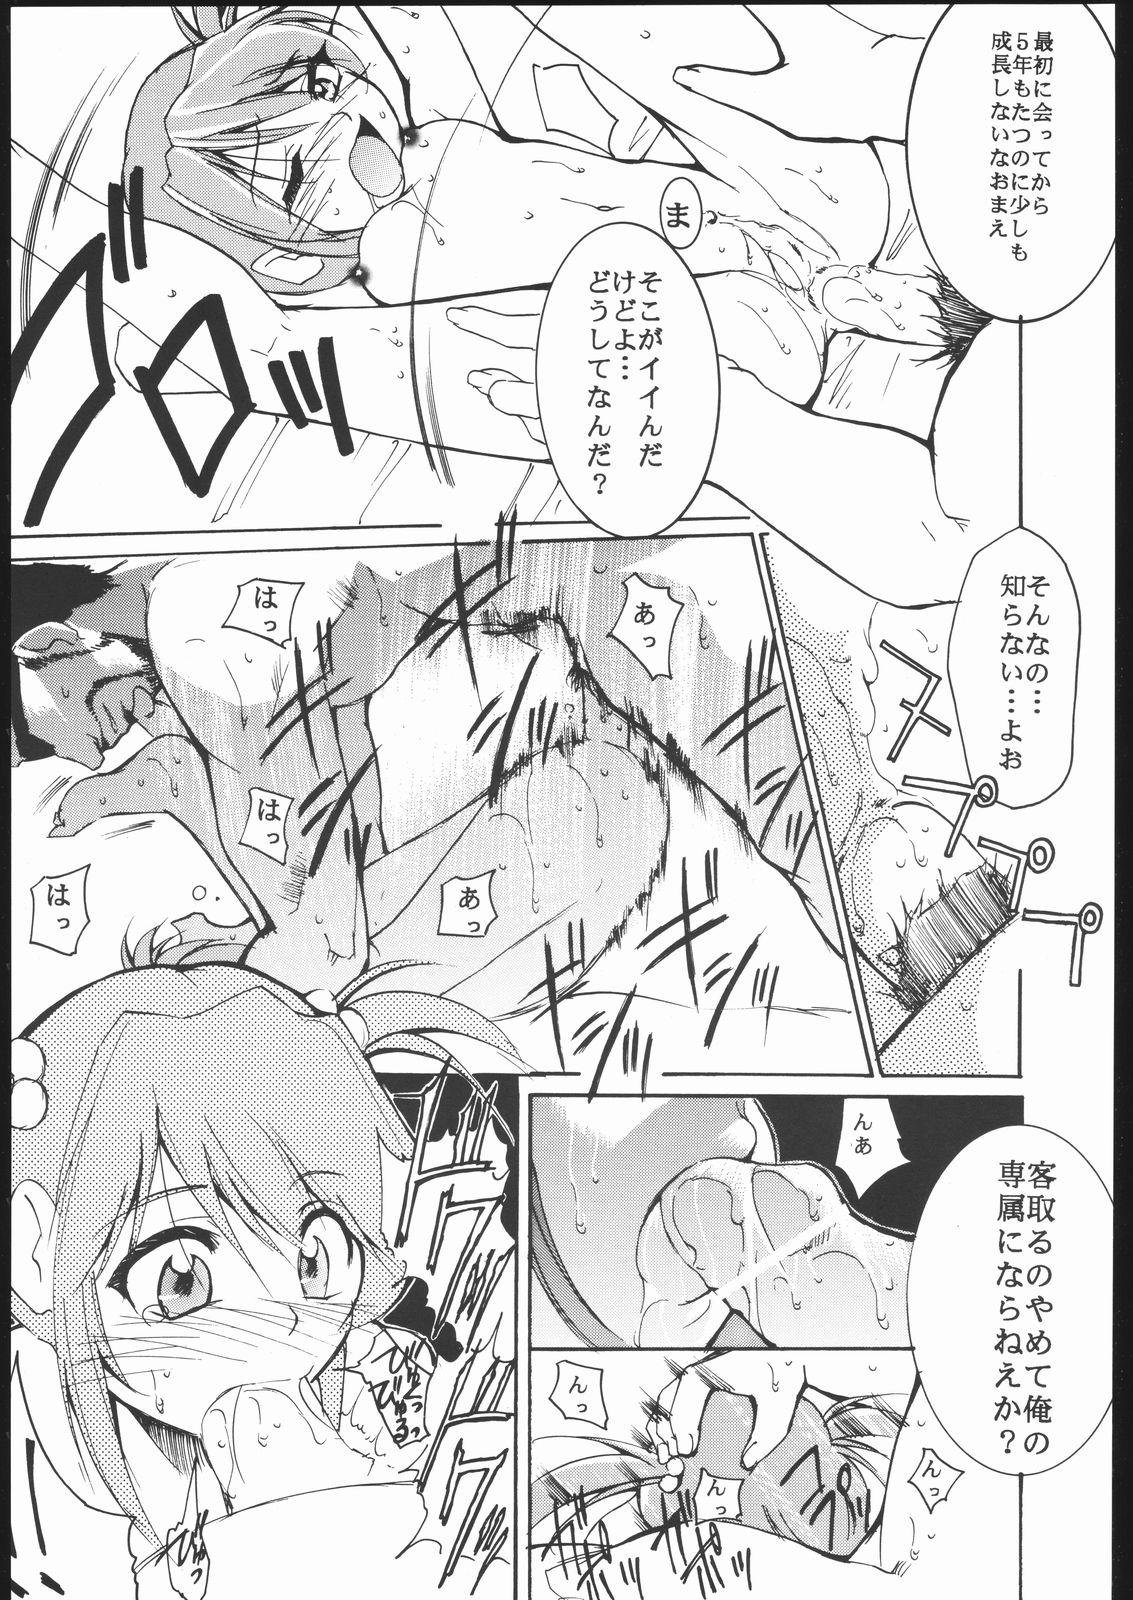 Sislovesme Kami-Uta - Sakura taisen Jungle wa itsumo hare nochi guu Swingers - Page 8